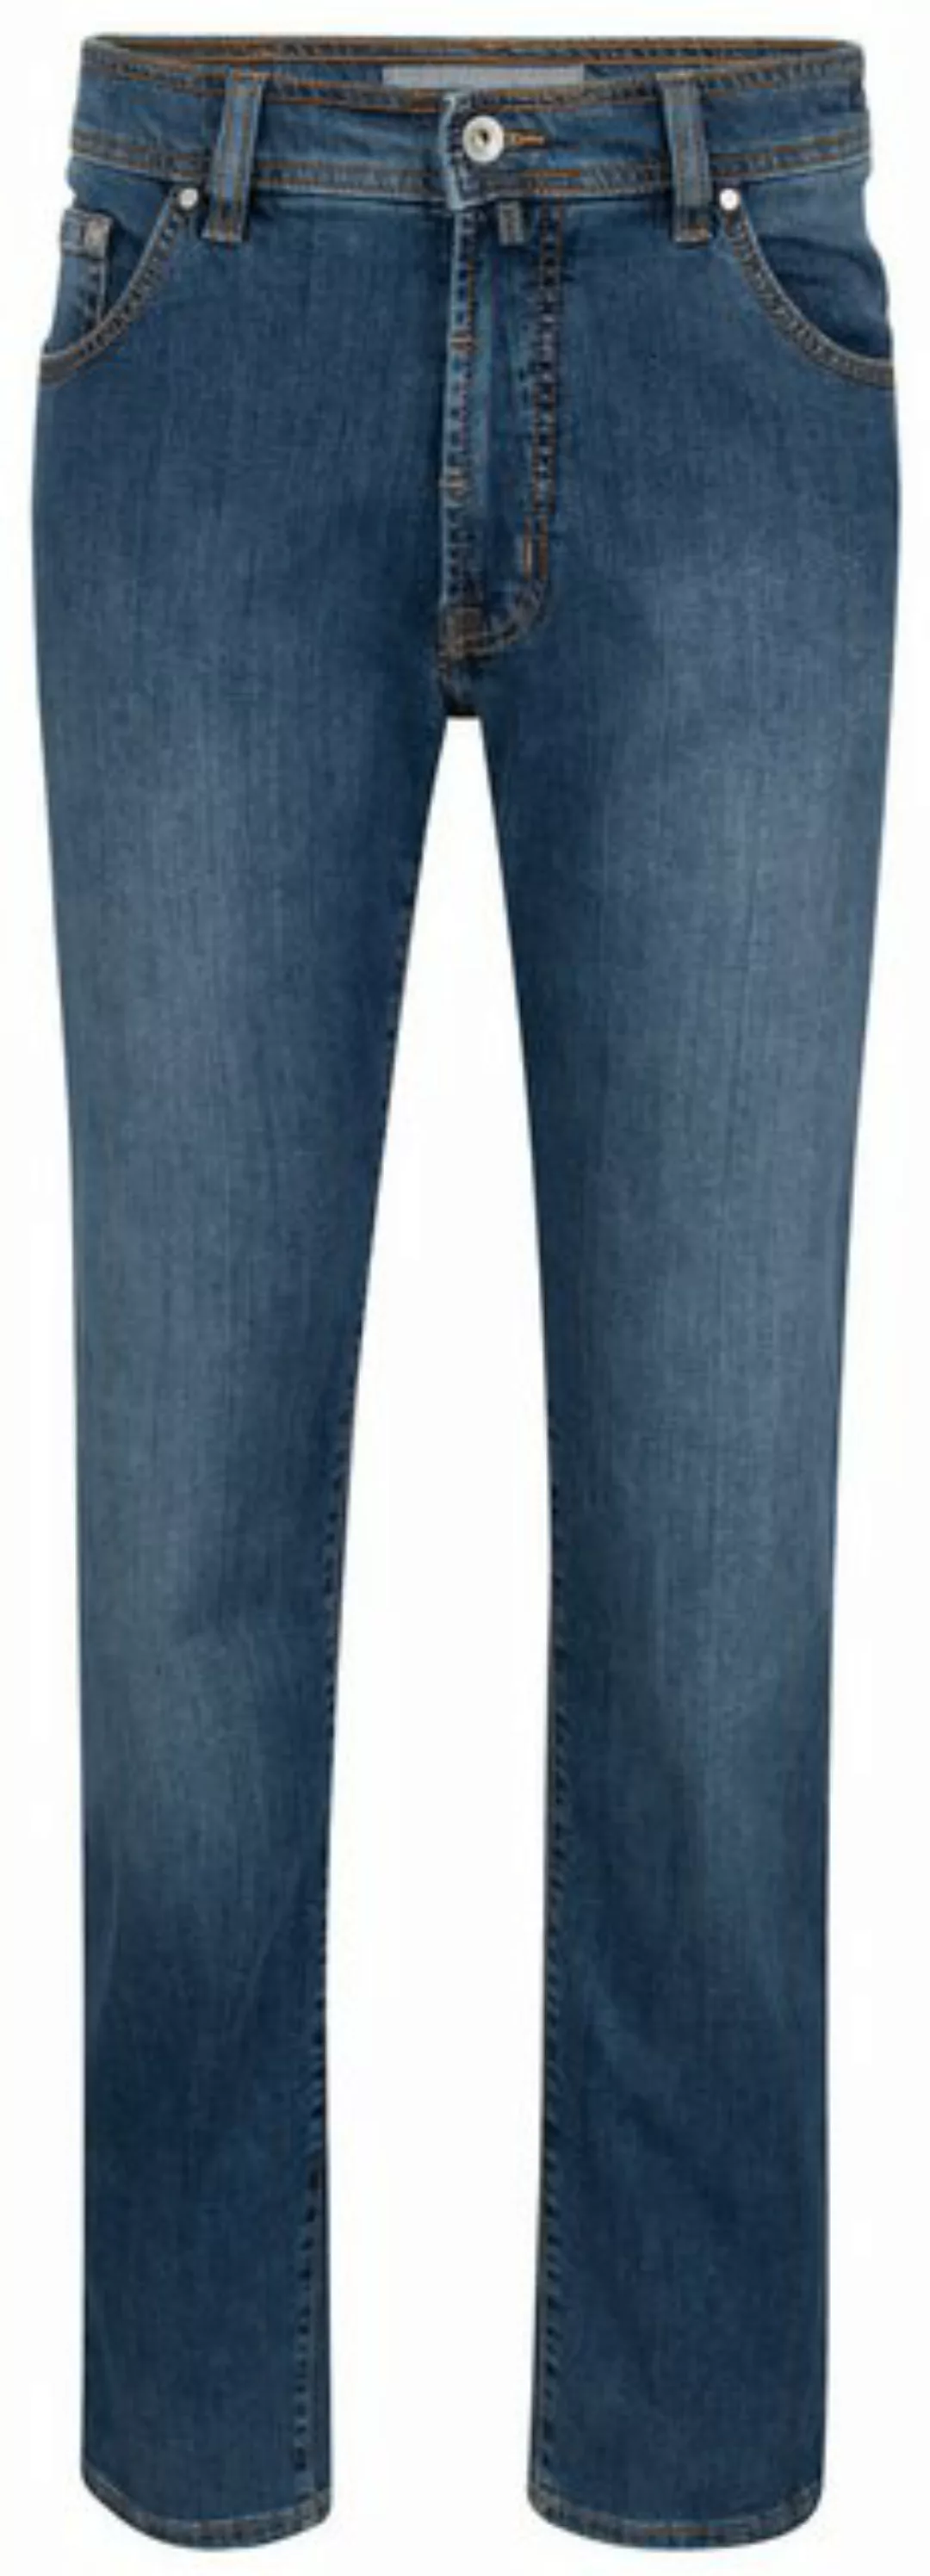 Pierre Cardin 5-Pocket-Jeans PIERRE CARDIN DEAUVILLE ocean blue stonewash 3 günstig online kaufen